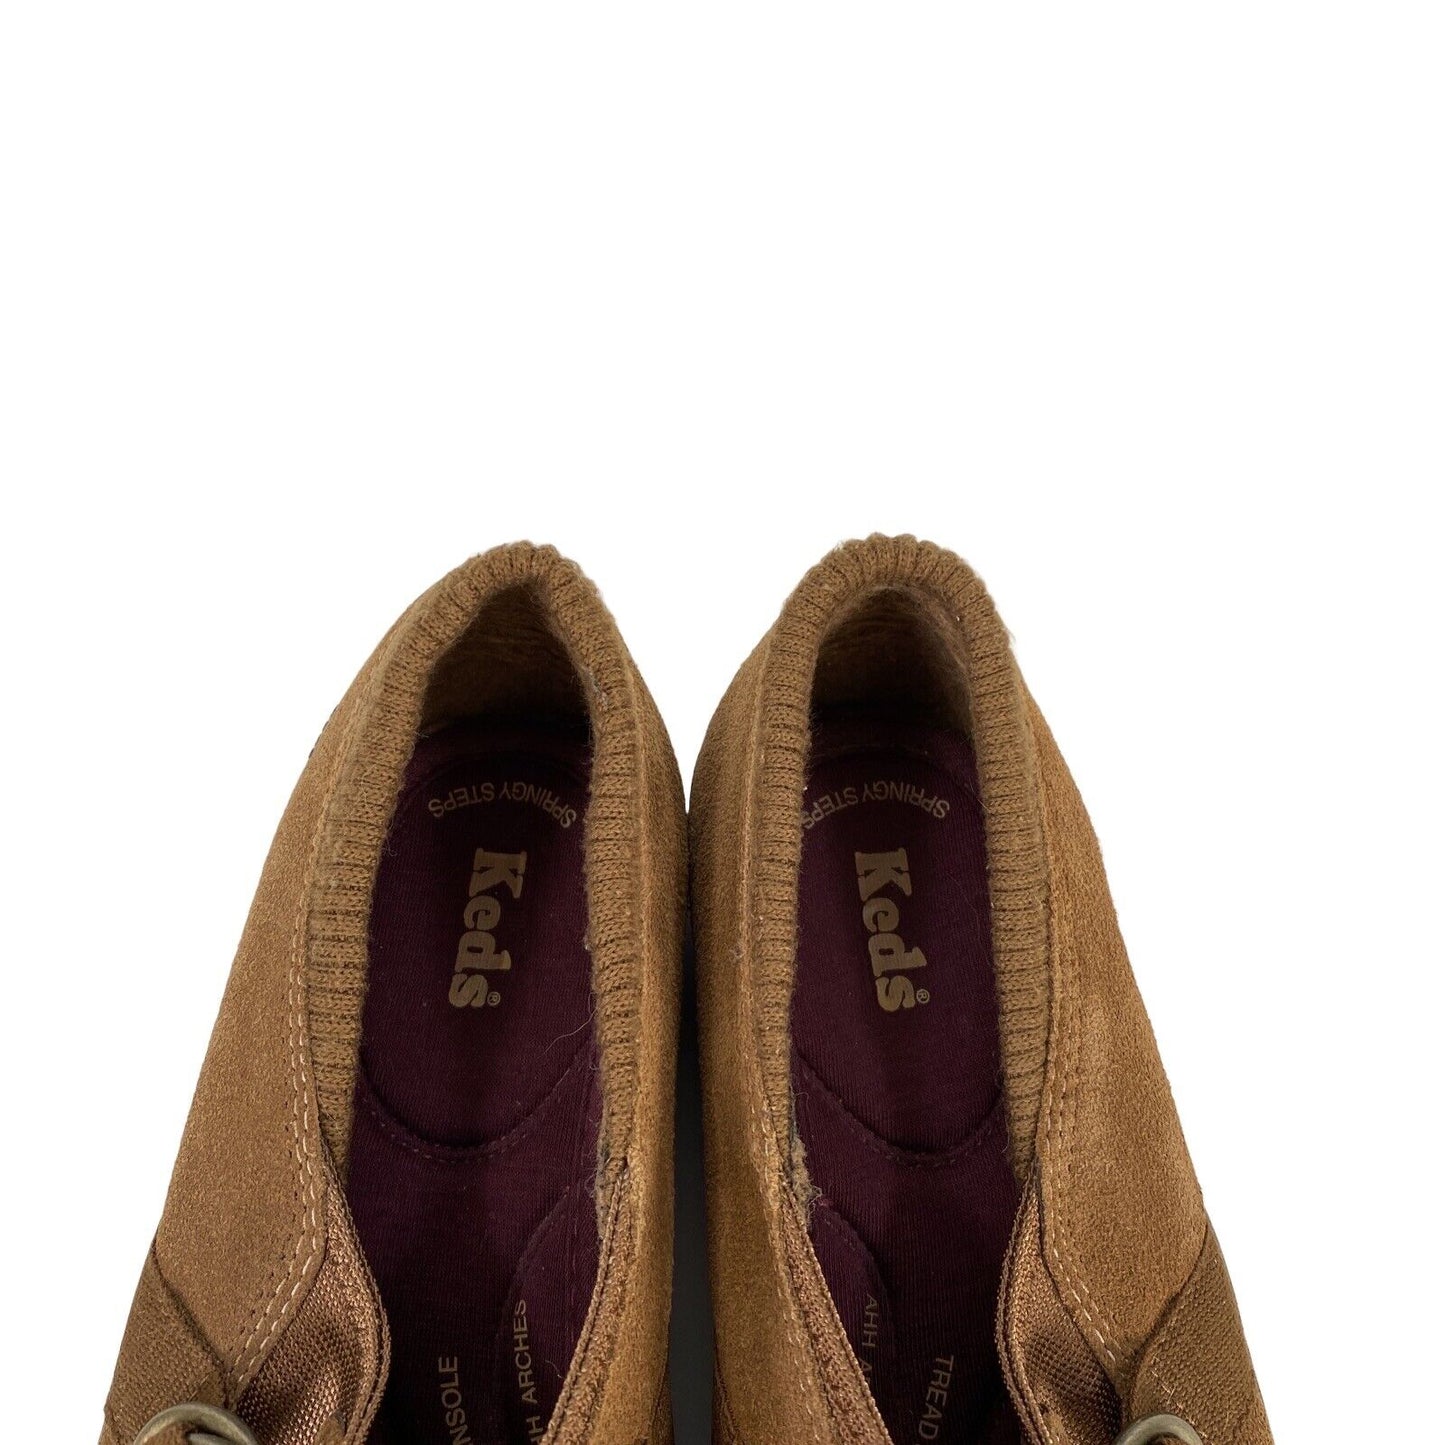 Keds Women's Brown Suede Slip On Fleece Lined Comfort Shoes - 7.5